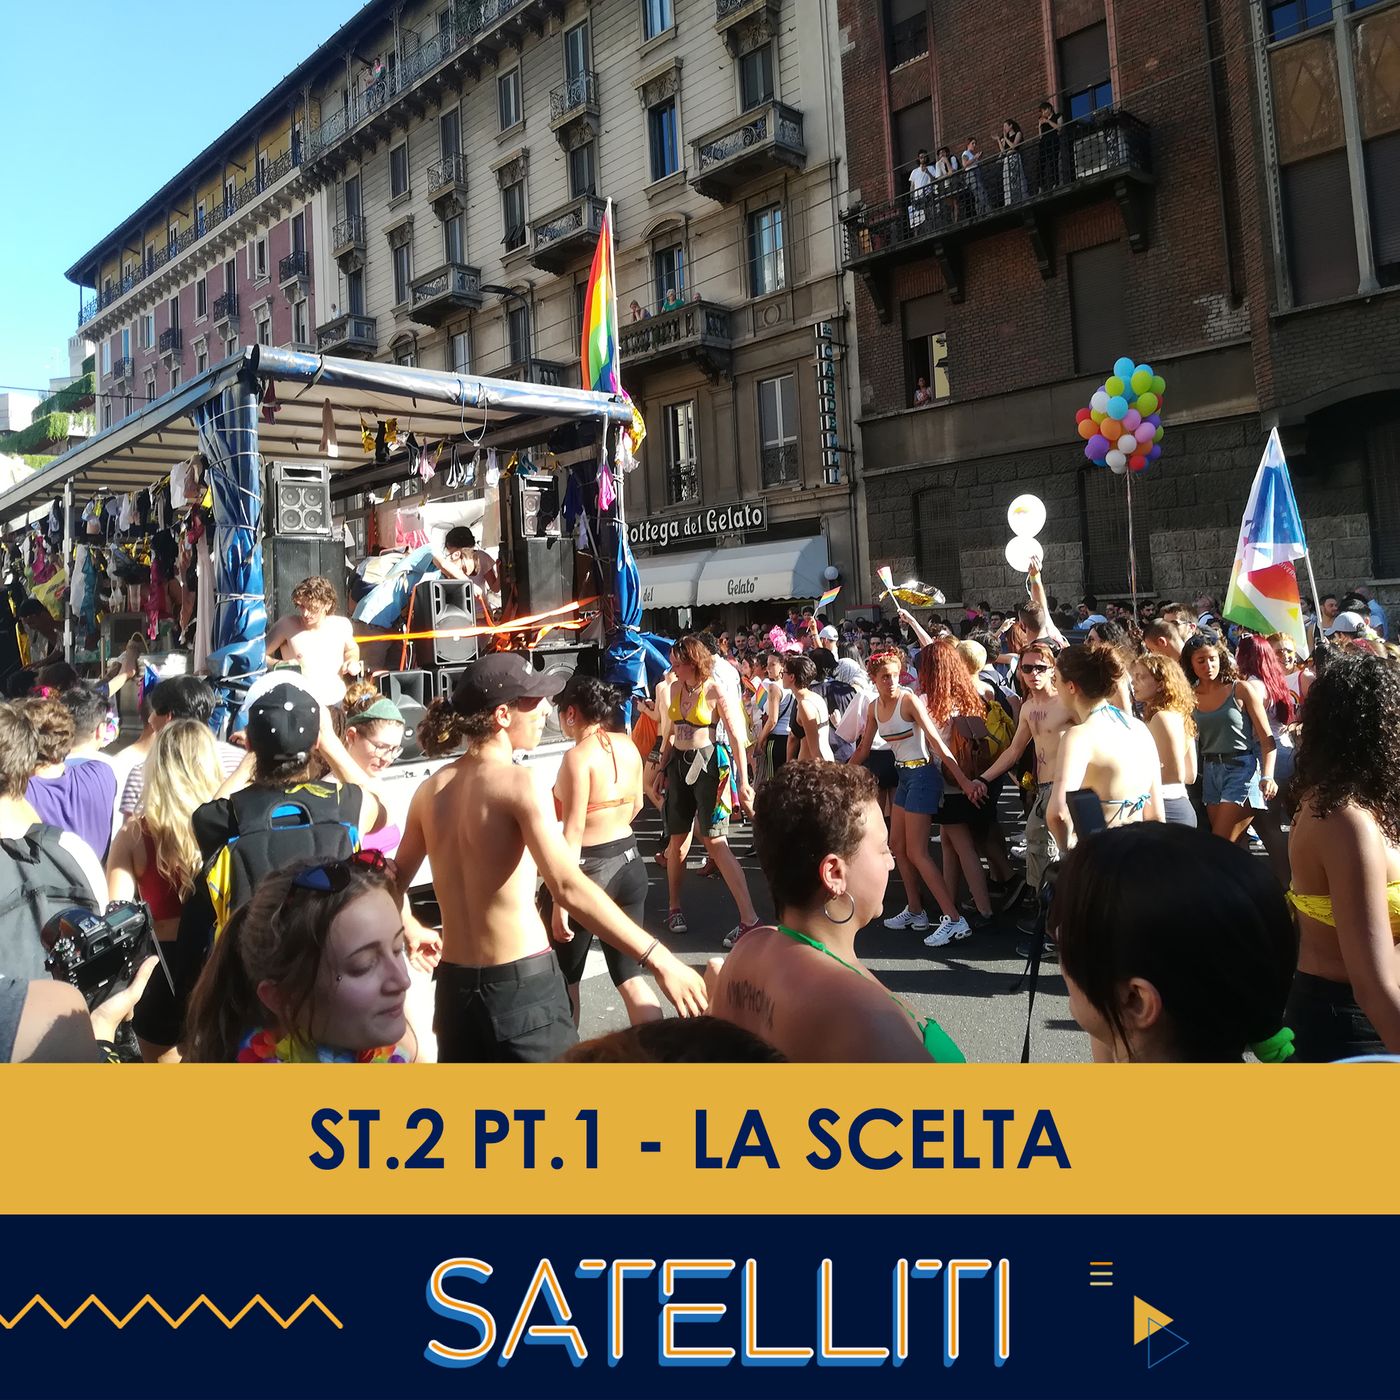 Satelliti ST.2 PT.1 - La Scelta - 26/01/2021